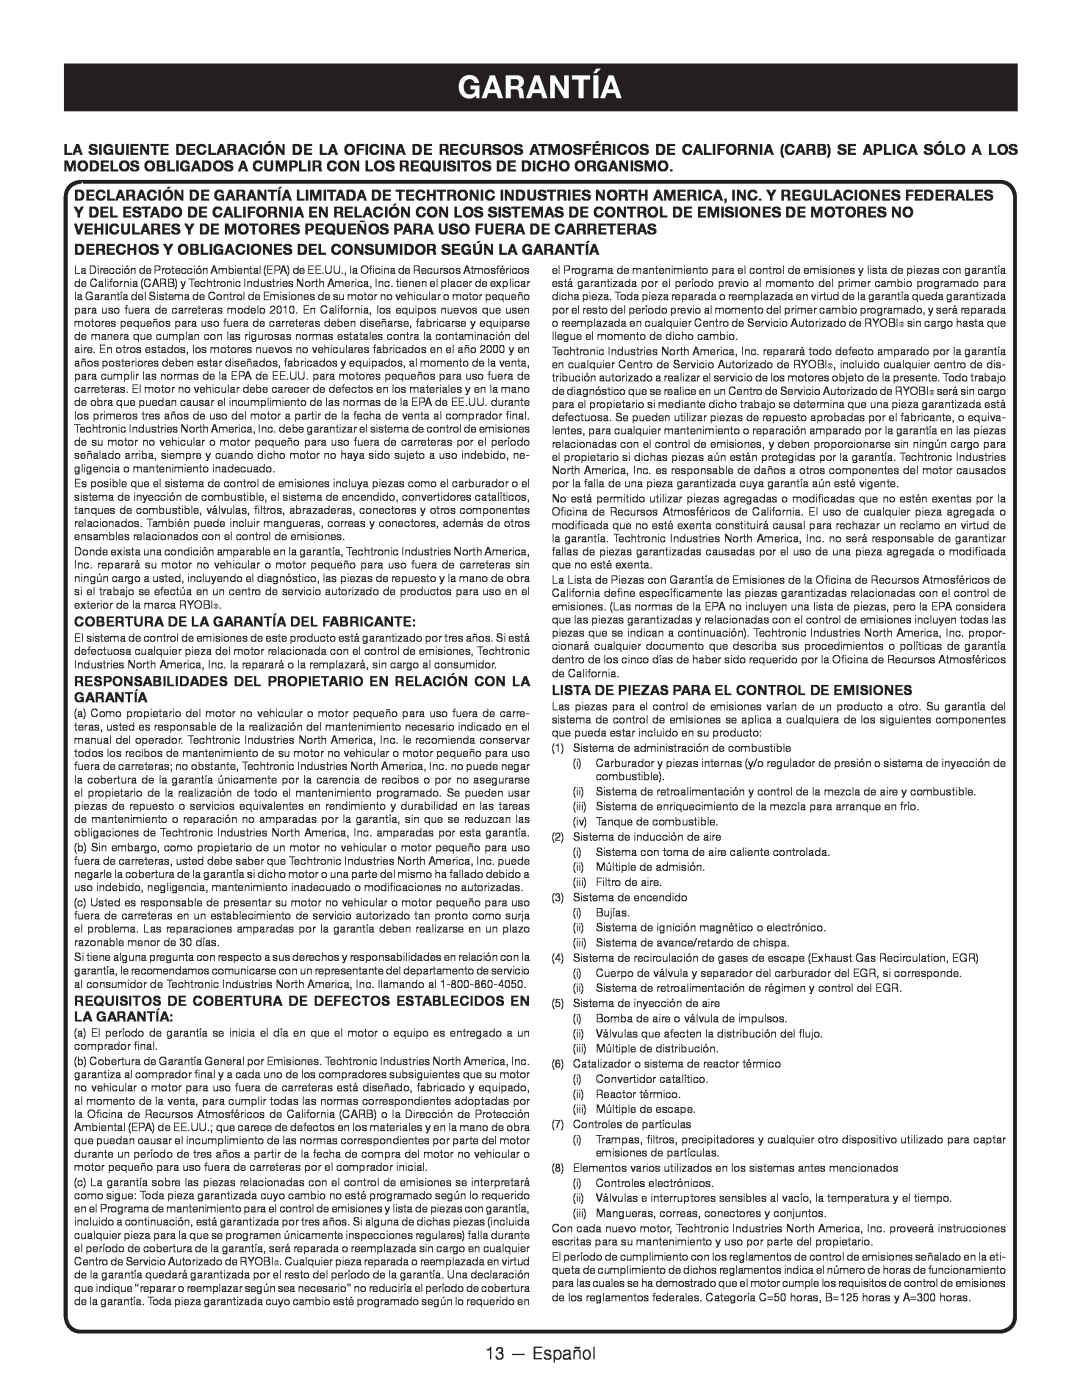 Ryobi RY34000 13 — Español, Cobertura De La Garantía Del Fabricante, Lista De Piezas Para El Control De Emisiones 